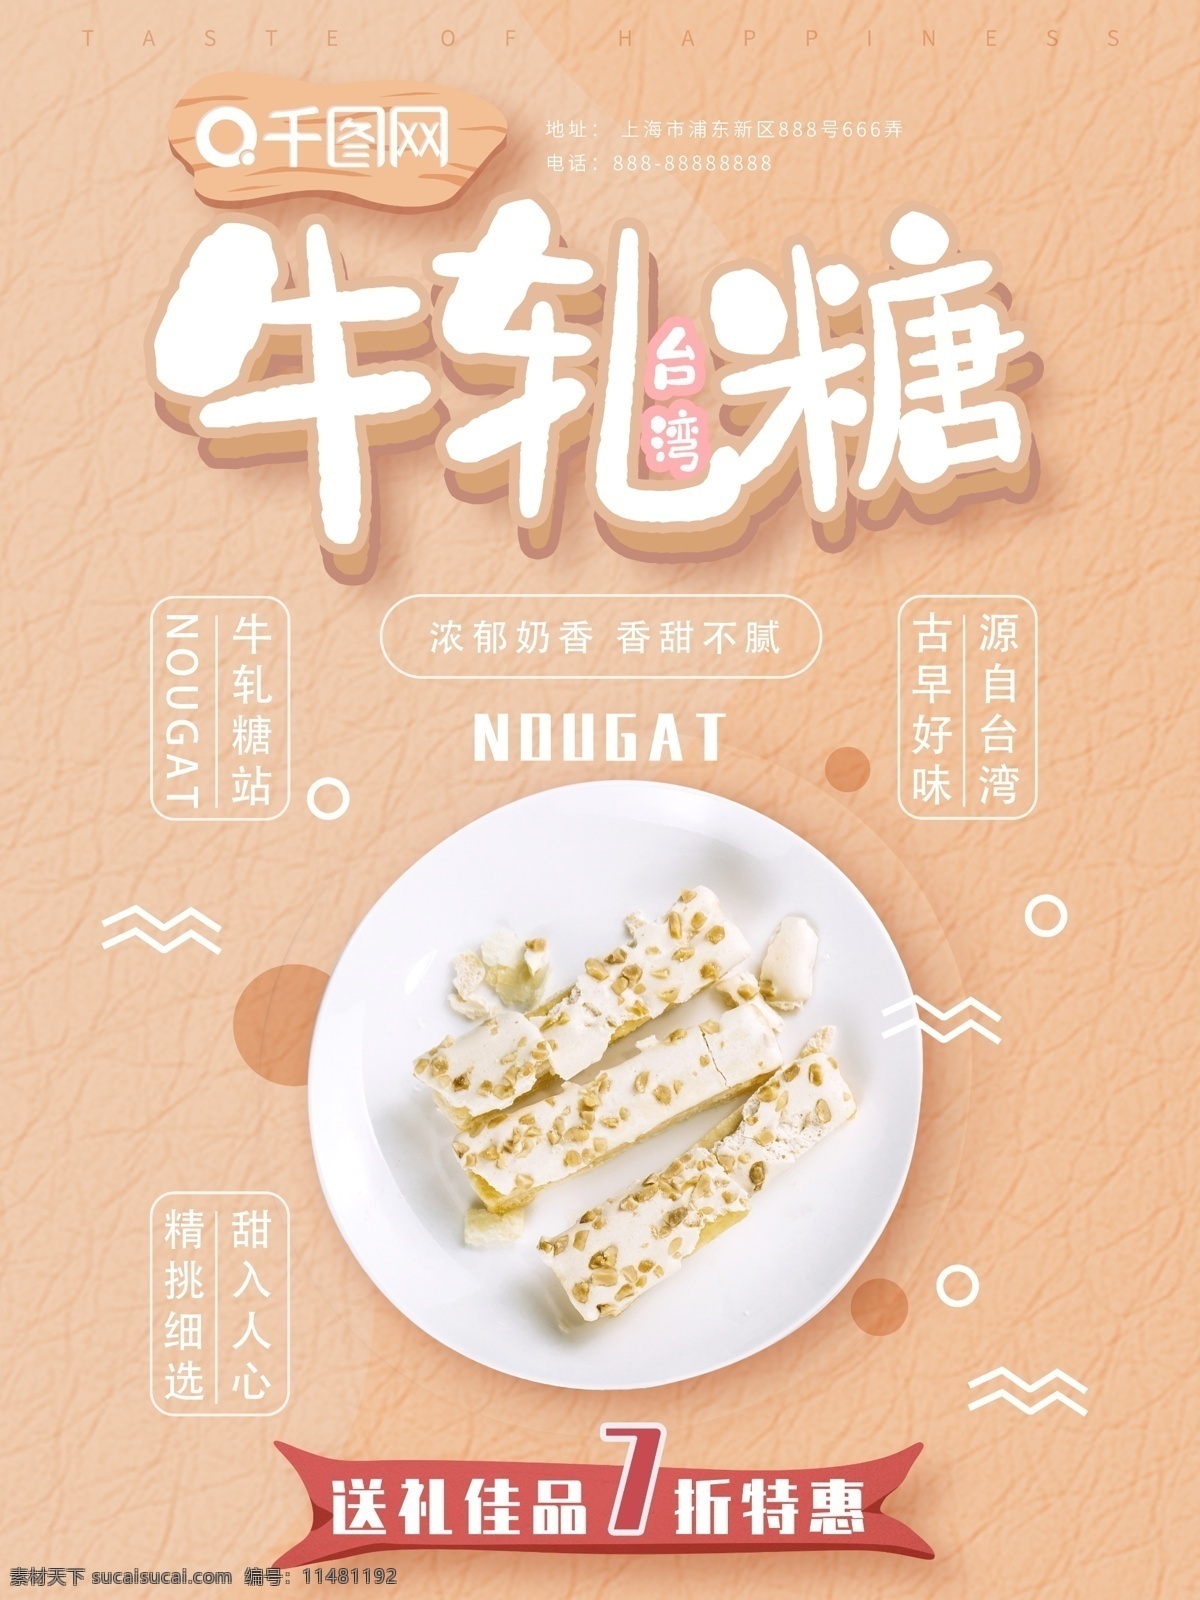 可爱 清新 台湾 牛轧糖 美食 海报 简约 古早味 台湾特色美食 送礼